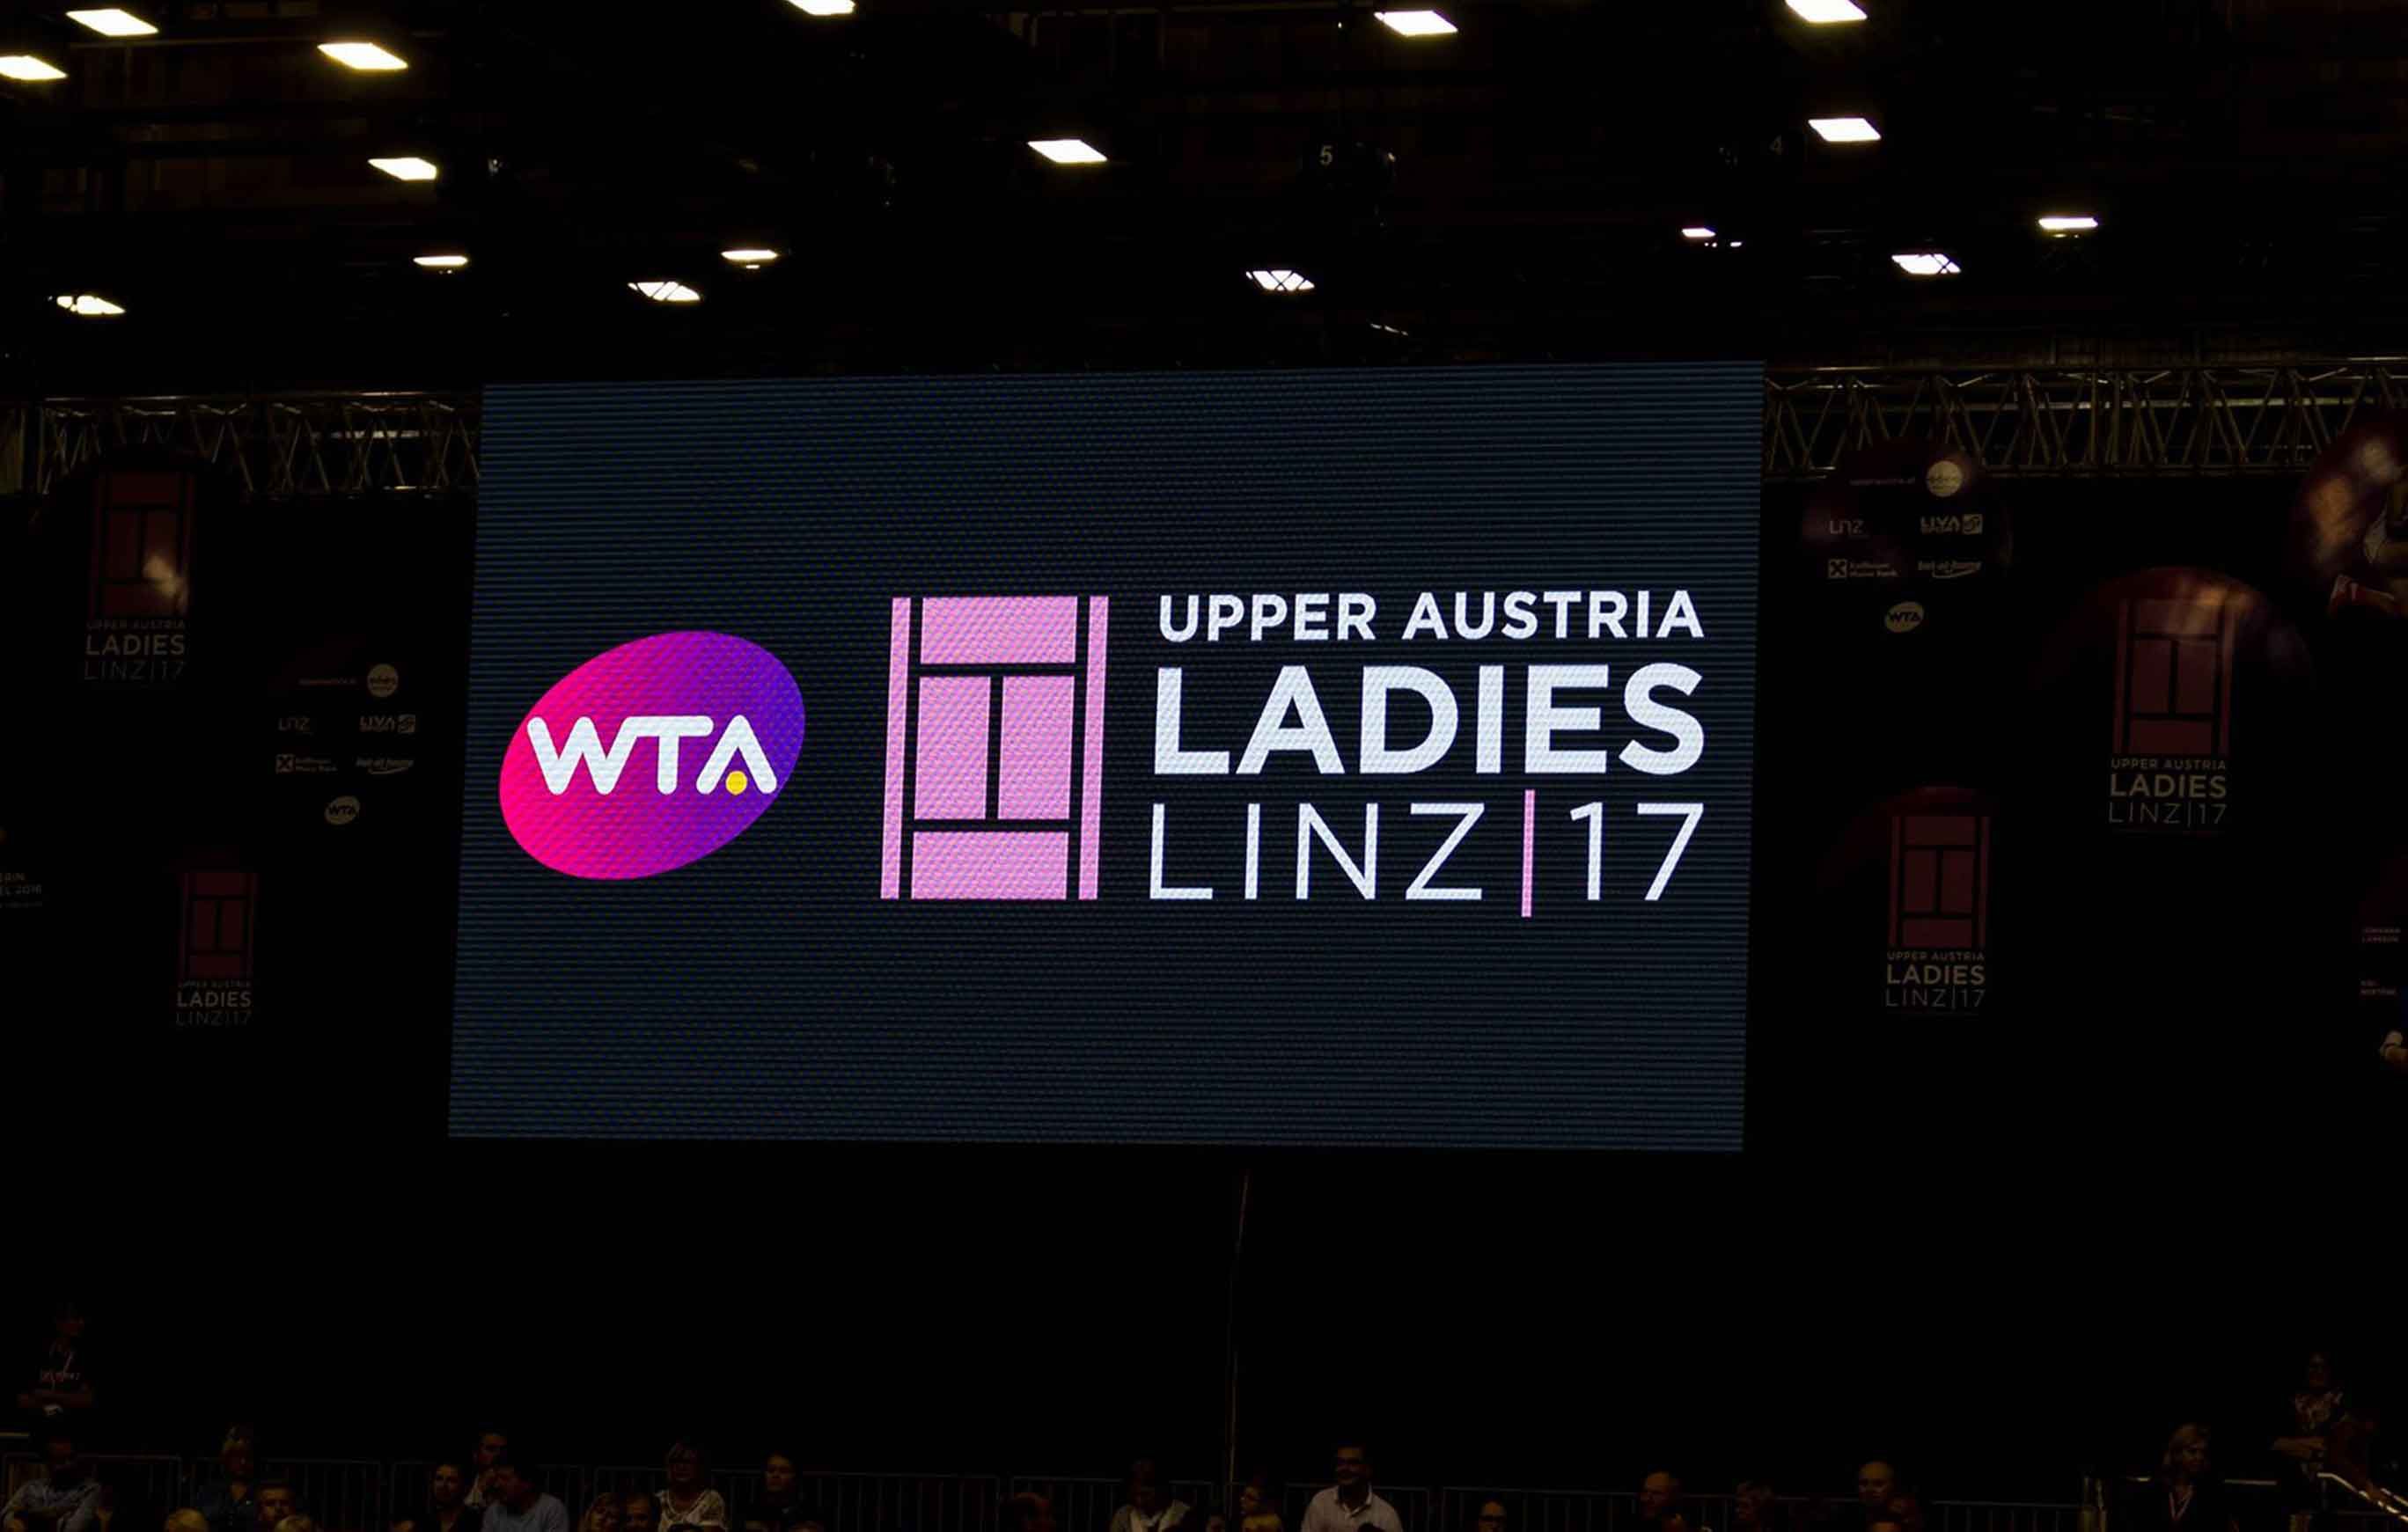 Upper Austria Ladies Led